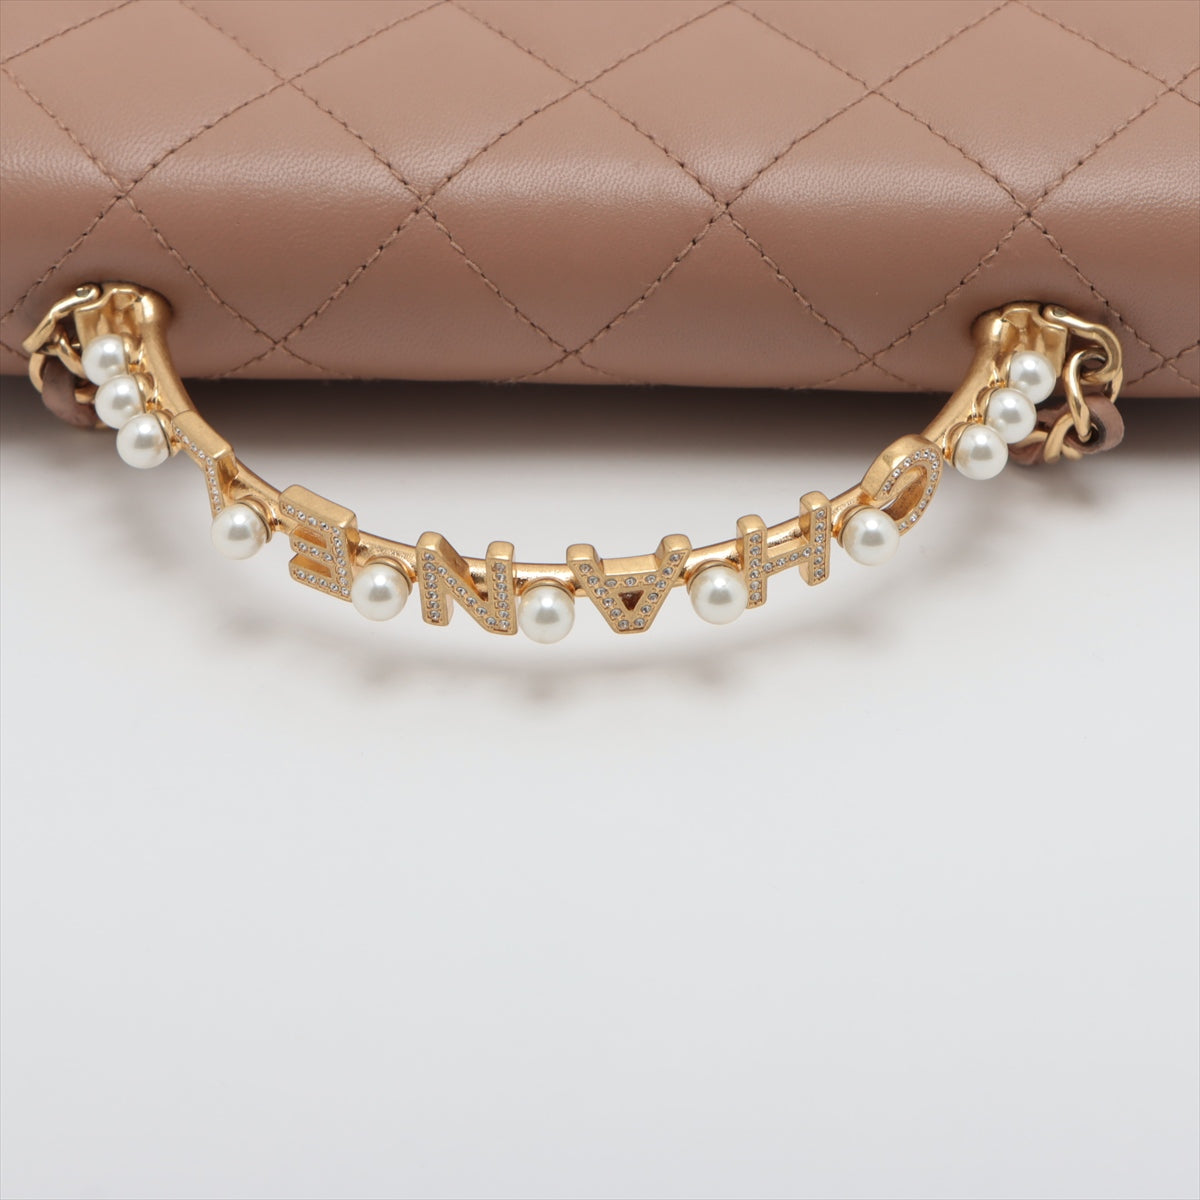 Chanel Matelasse Lambskin Chain wallet 2WAY Logo Pearl Pink beige Silver Metal fittings